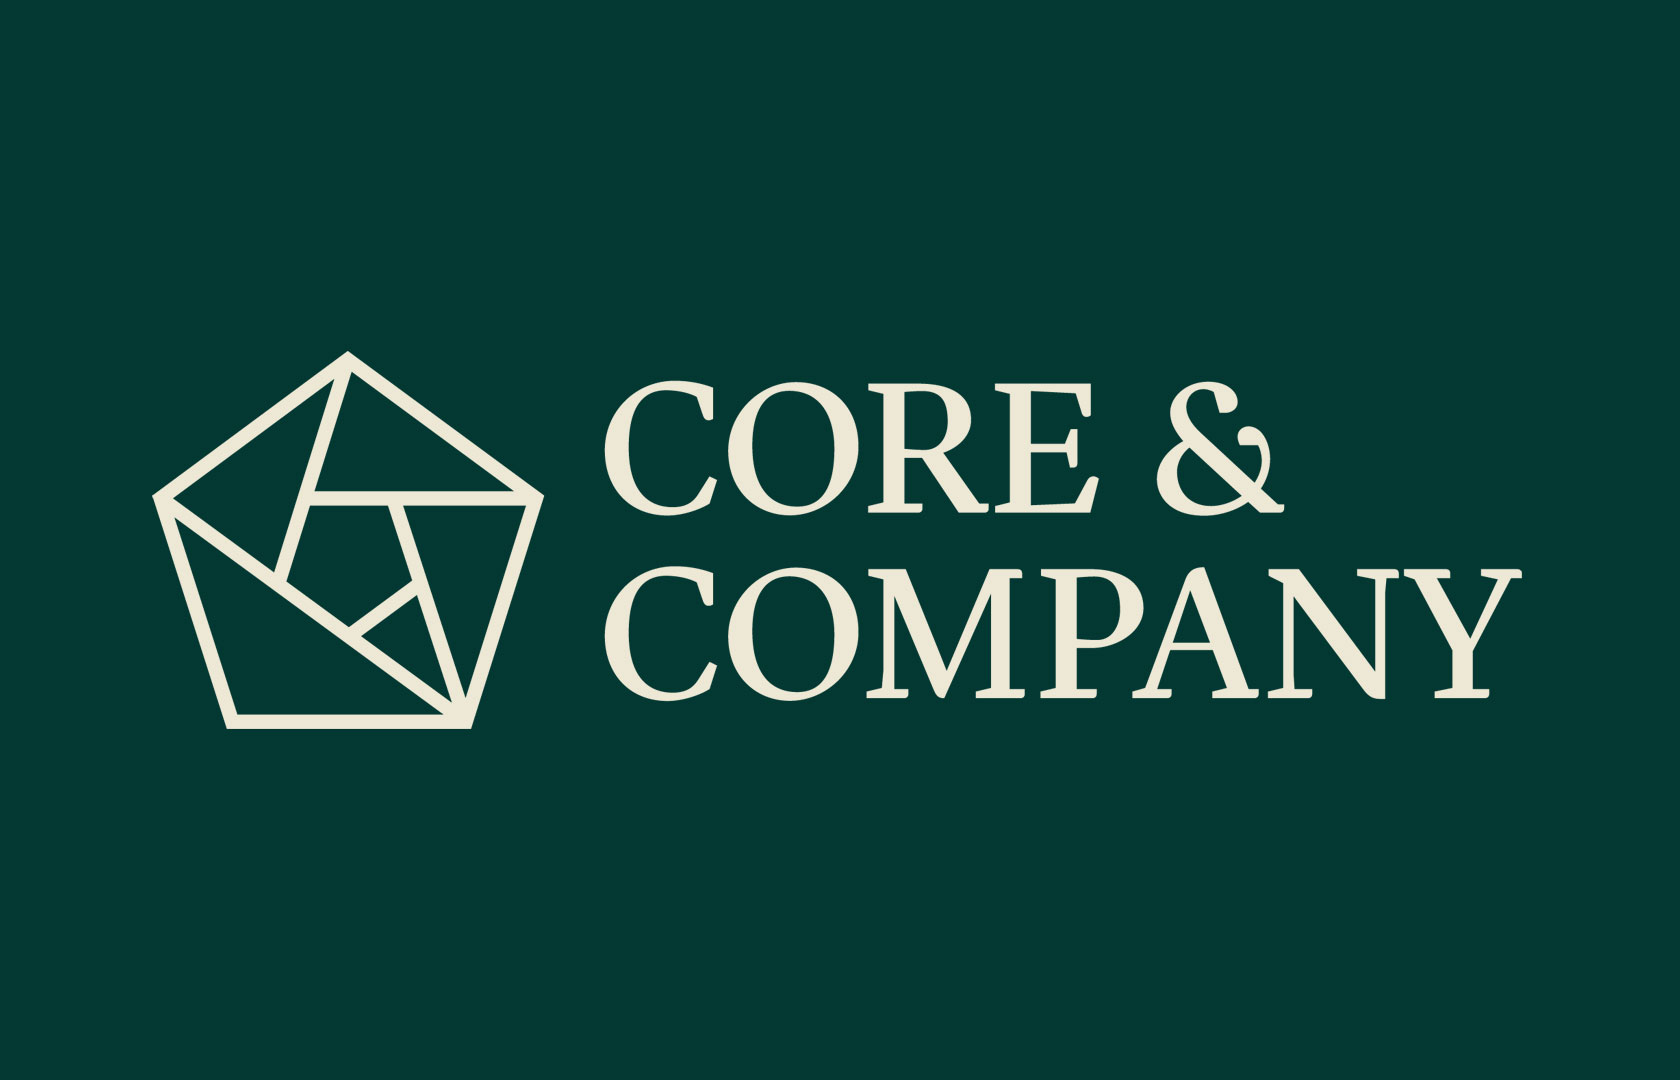 CC-logo_green_bg